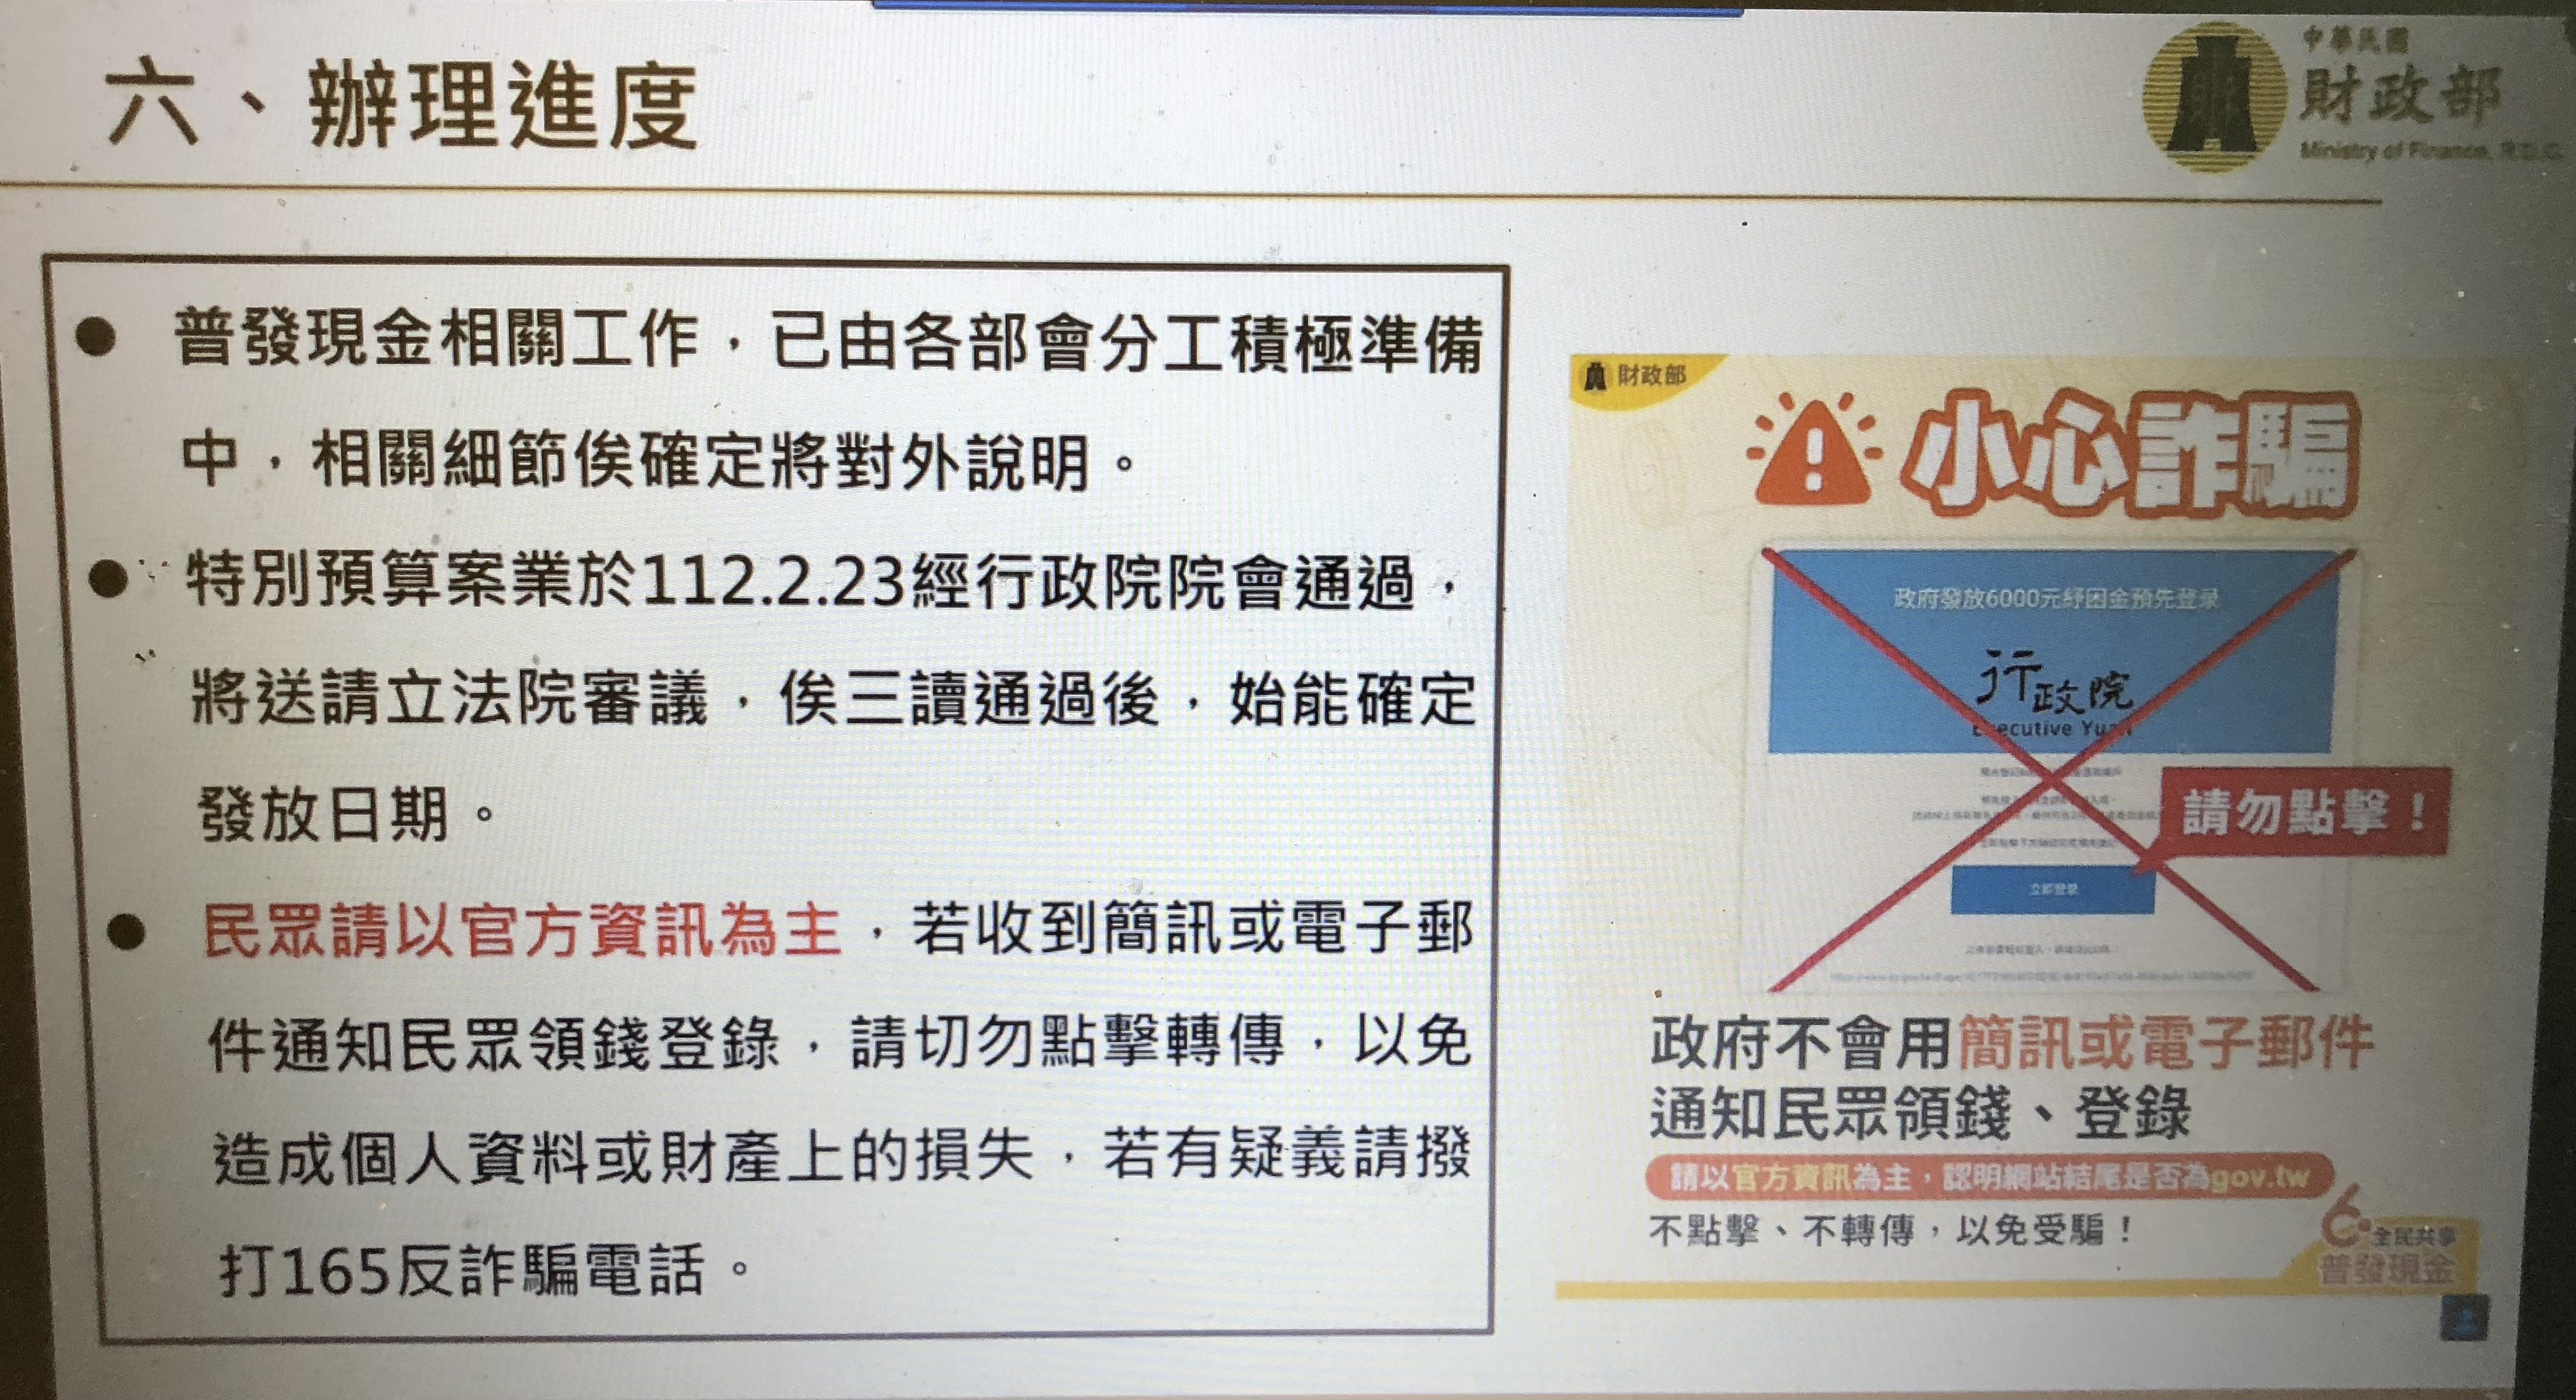 普發6000元有5種方式領取！財政部首次說明規劃　懶人包秒懂 - 台北郵報 | The Taipei Post